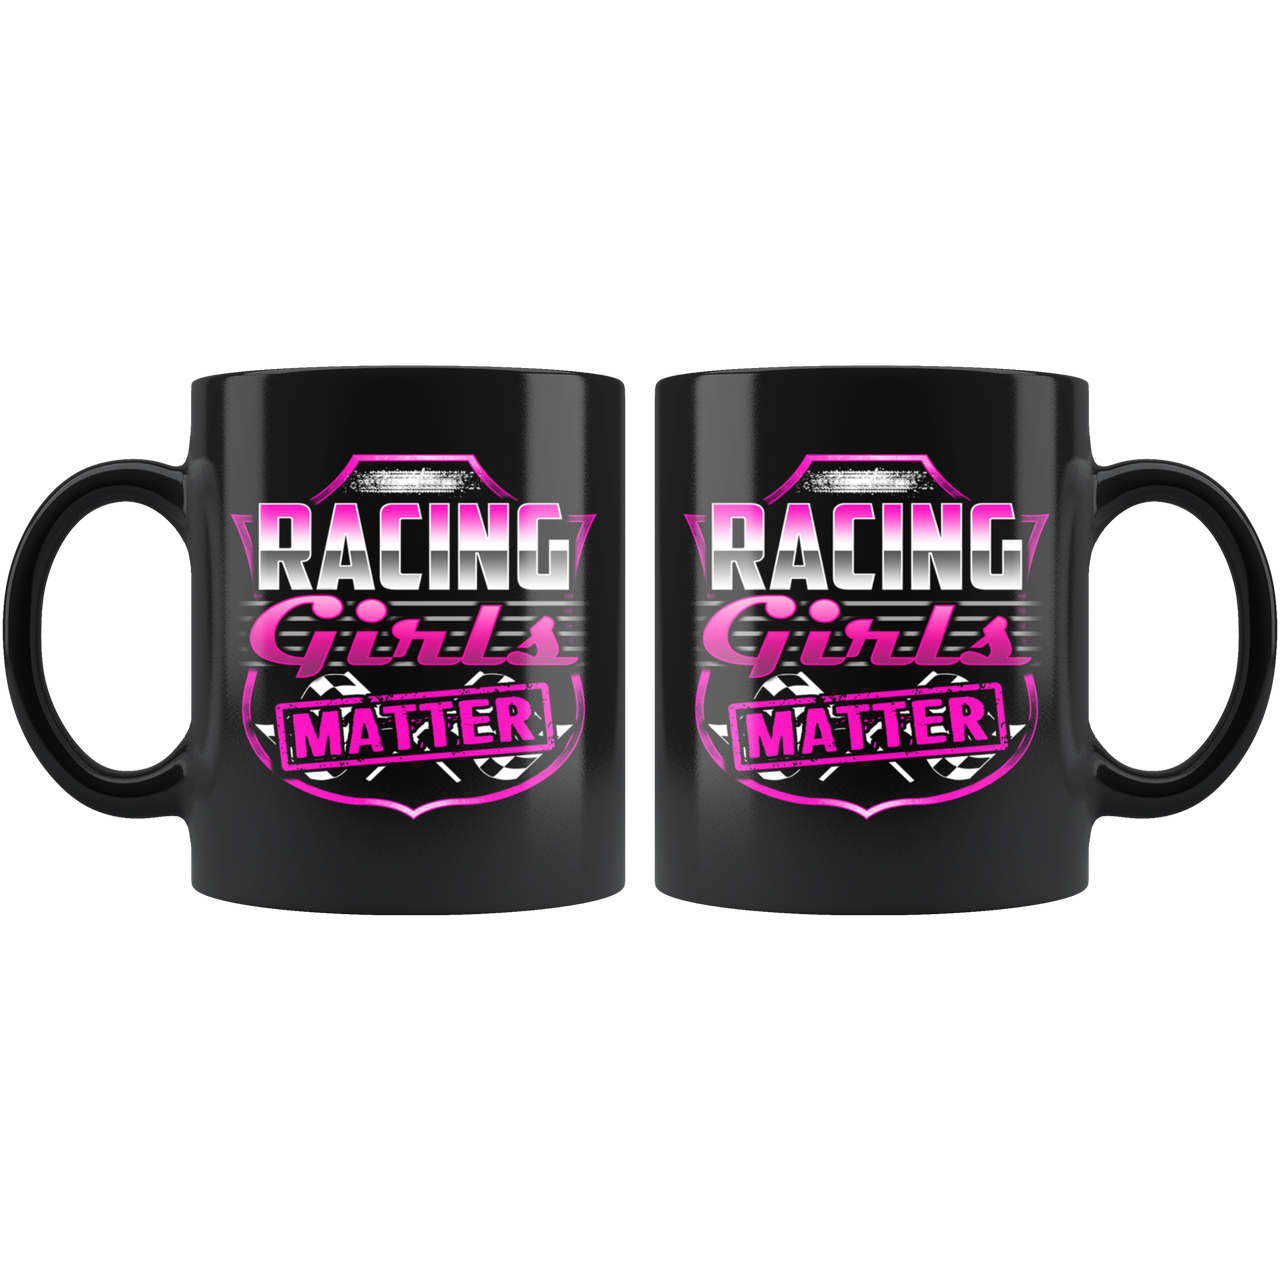 Racing Girls Matter Mug!